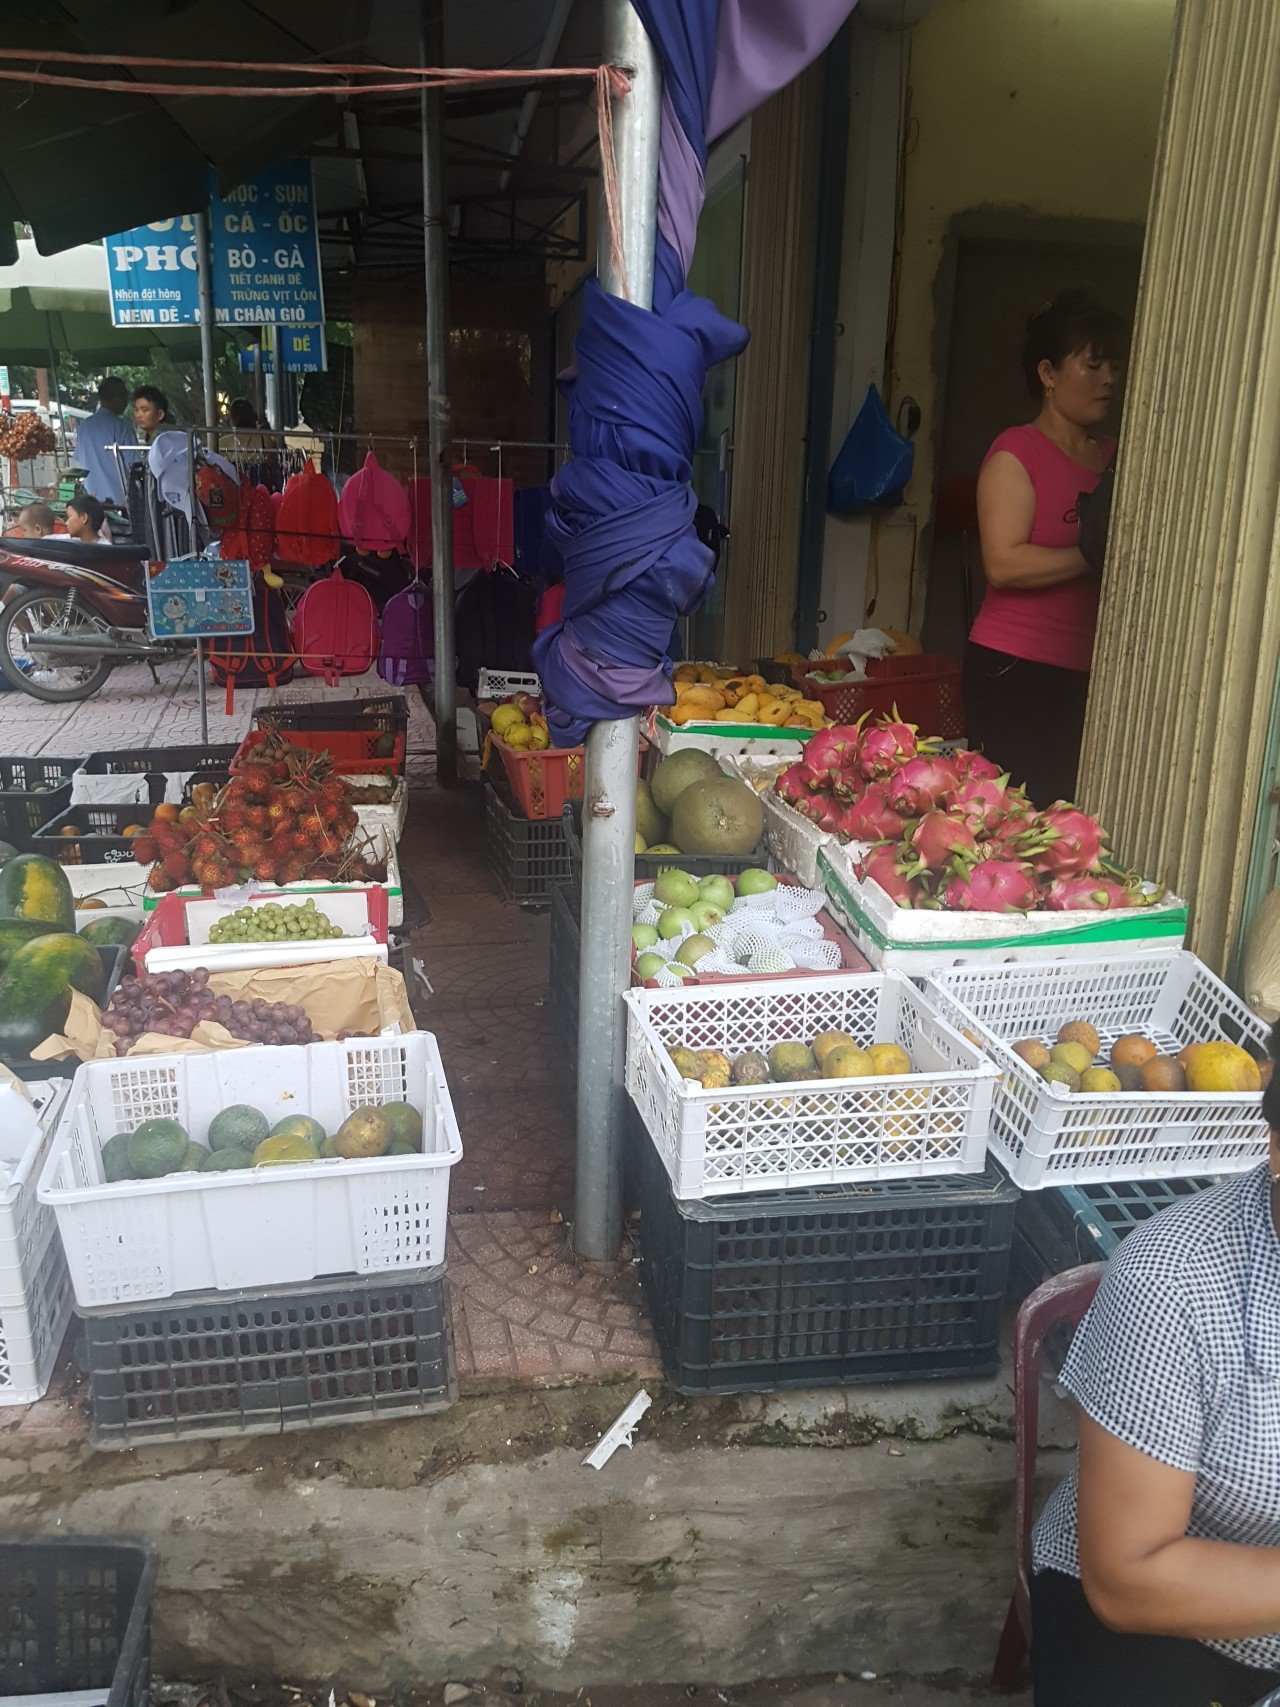 20180820_163836.jpg 스압)베트남에서 먹은 열대과일과 먹는방법